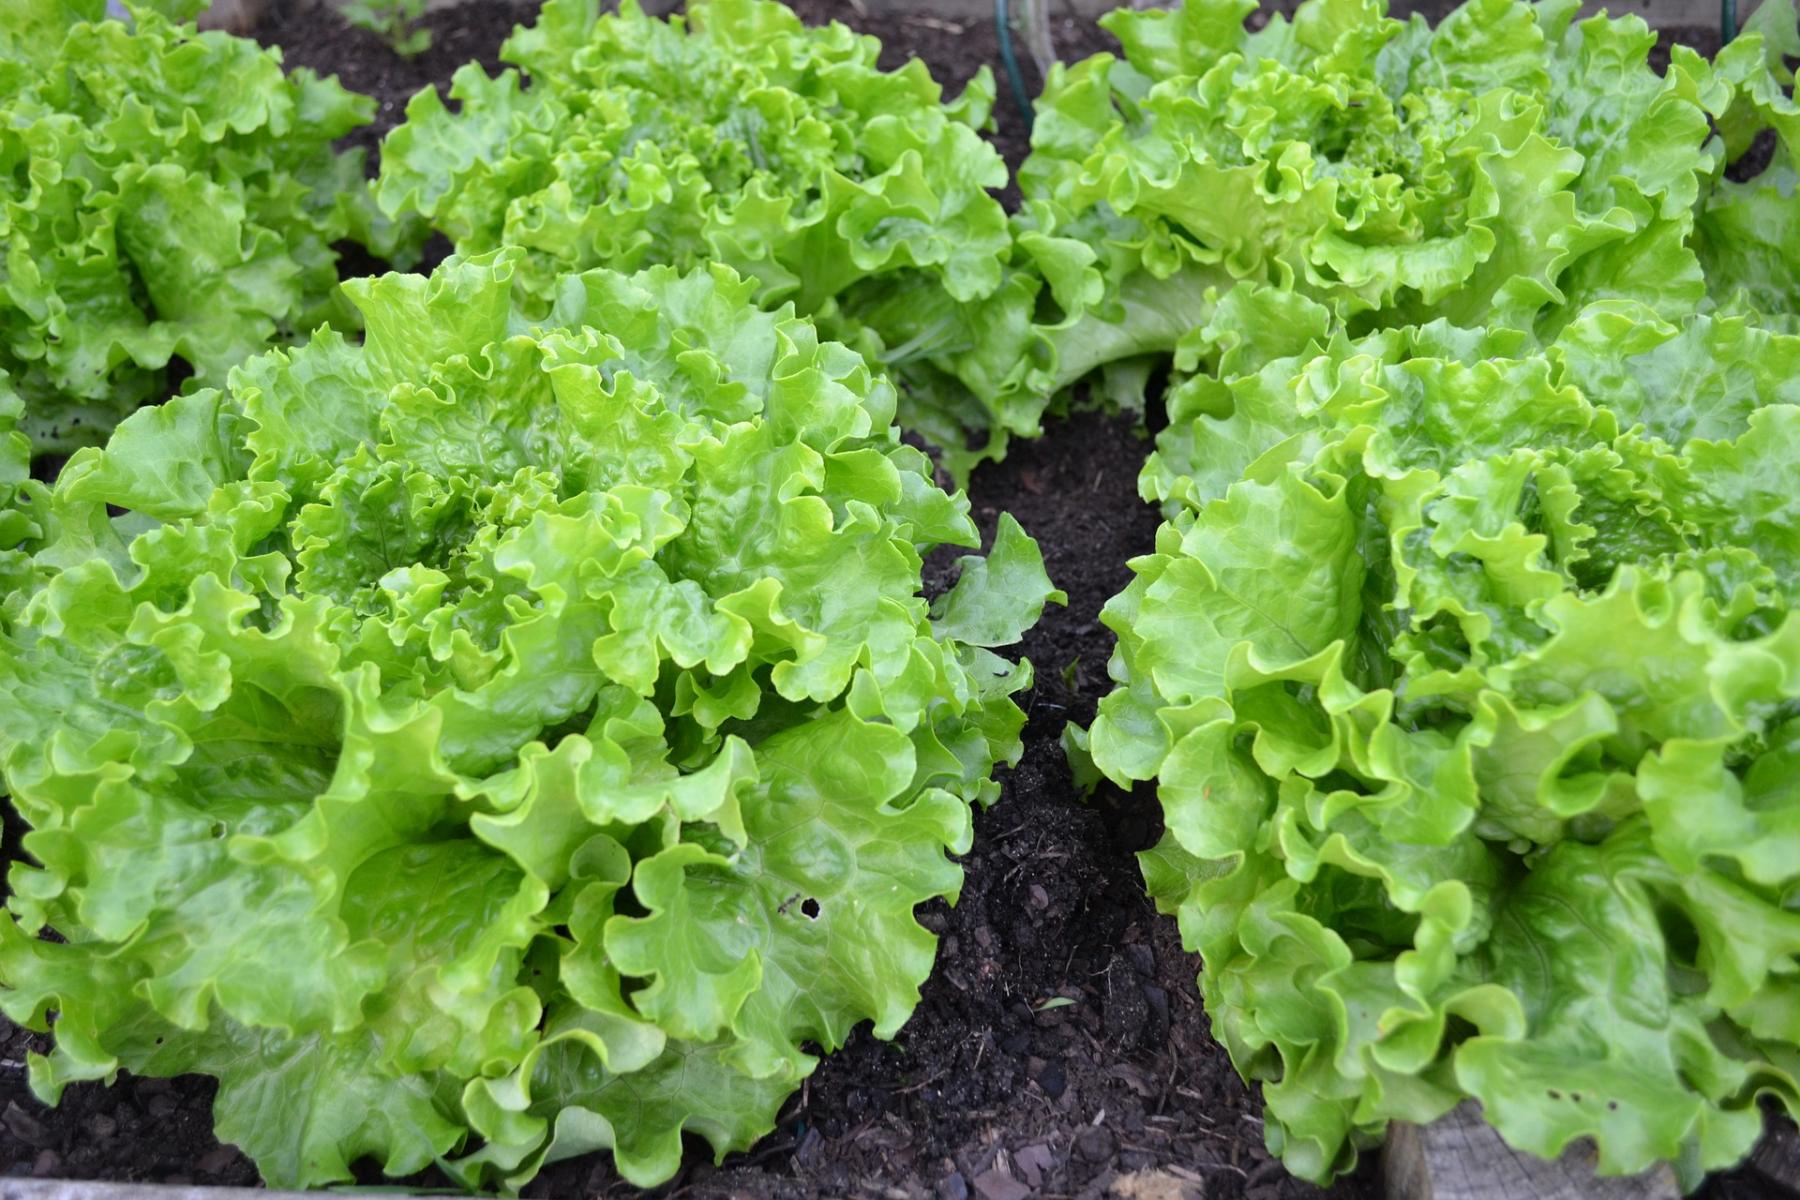 Image of leaf lettuce. 